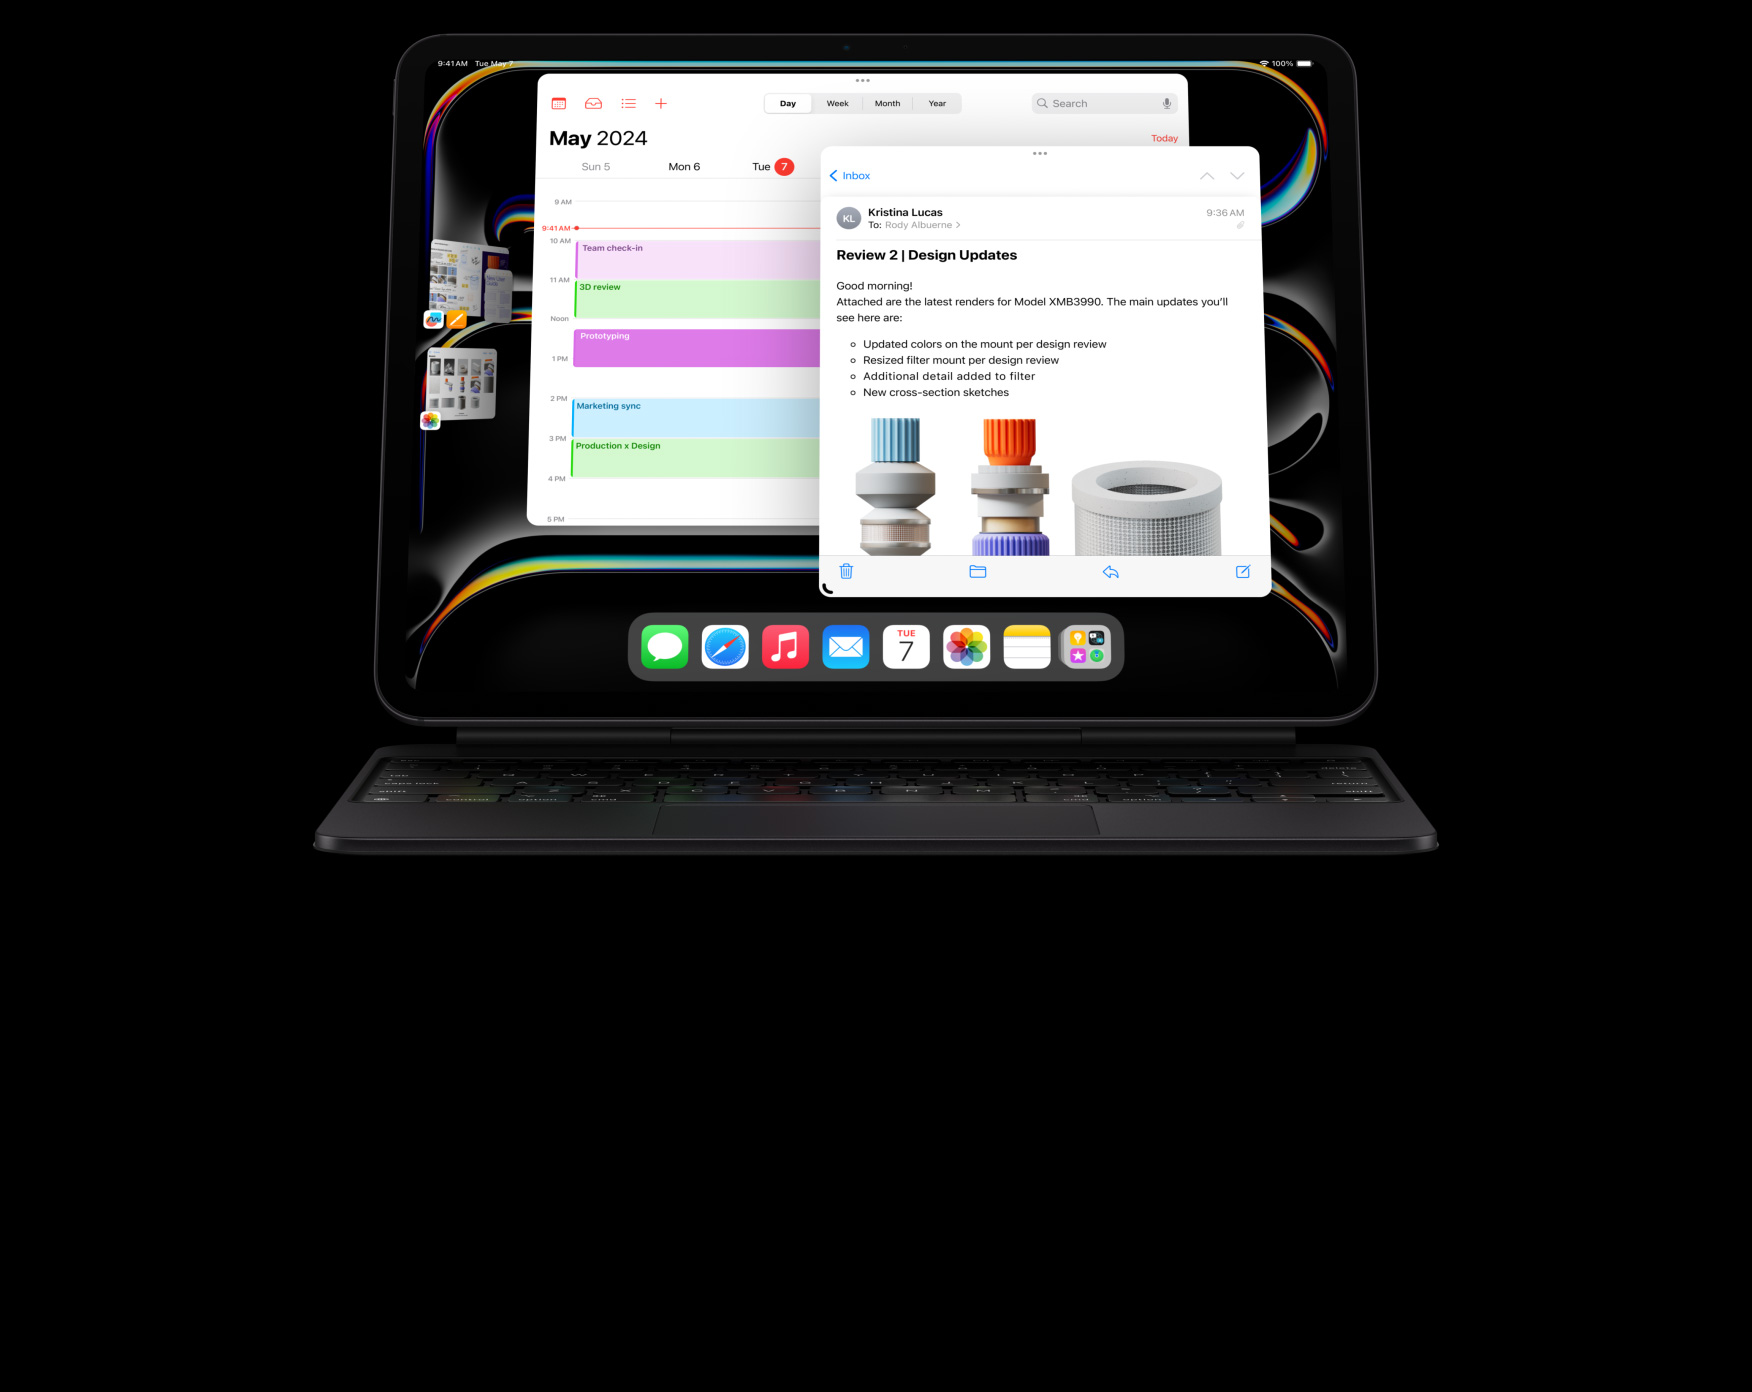 Horizontalios padėties „iPad Pro“ prijungtas prie „Magic Keyboard“, naudotojas atlieka kelias užduotis vienu metu, atidaręs kelias programas